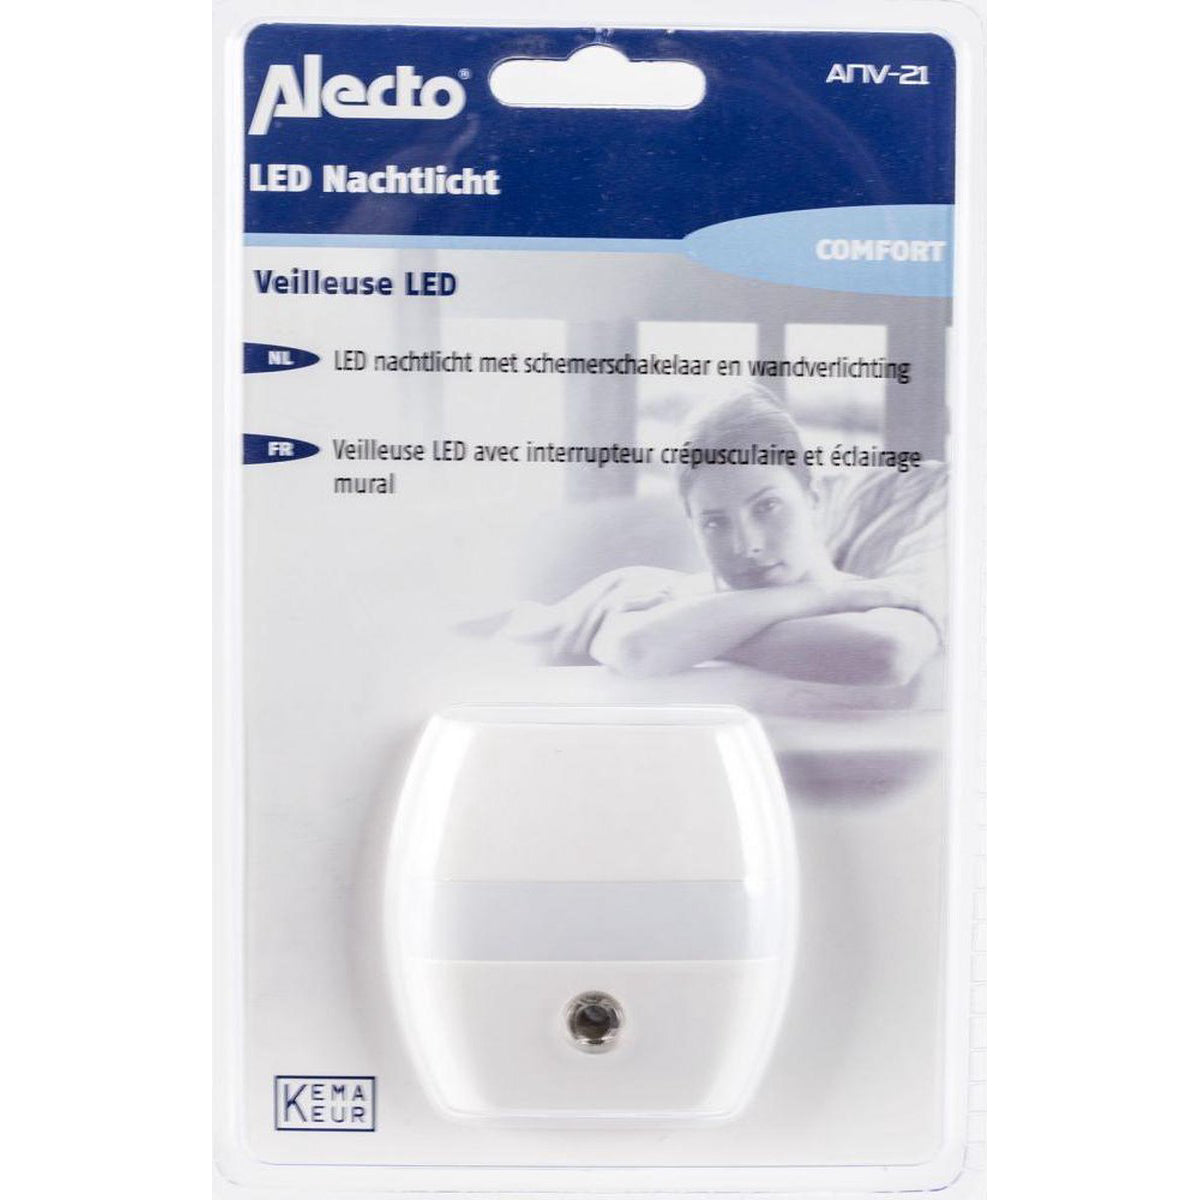 Alecto Nachtlicht LED